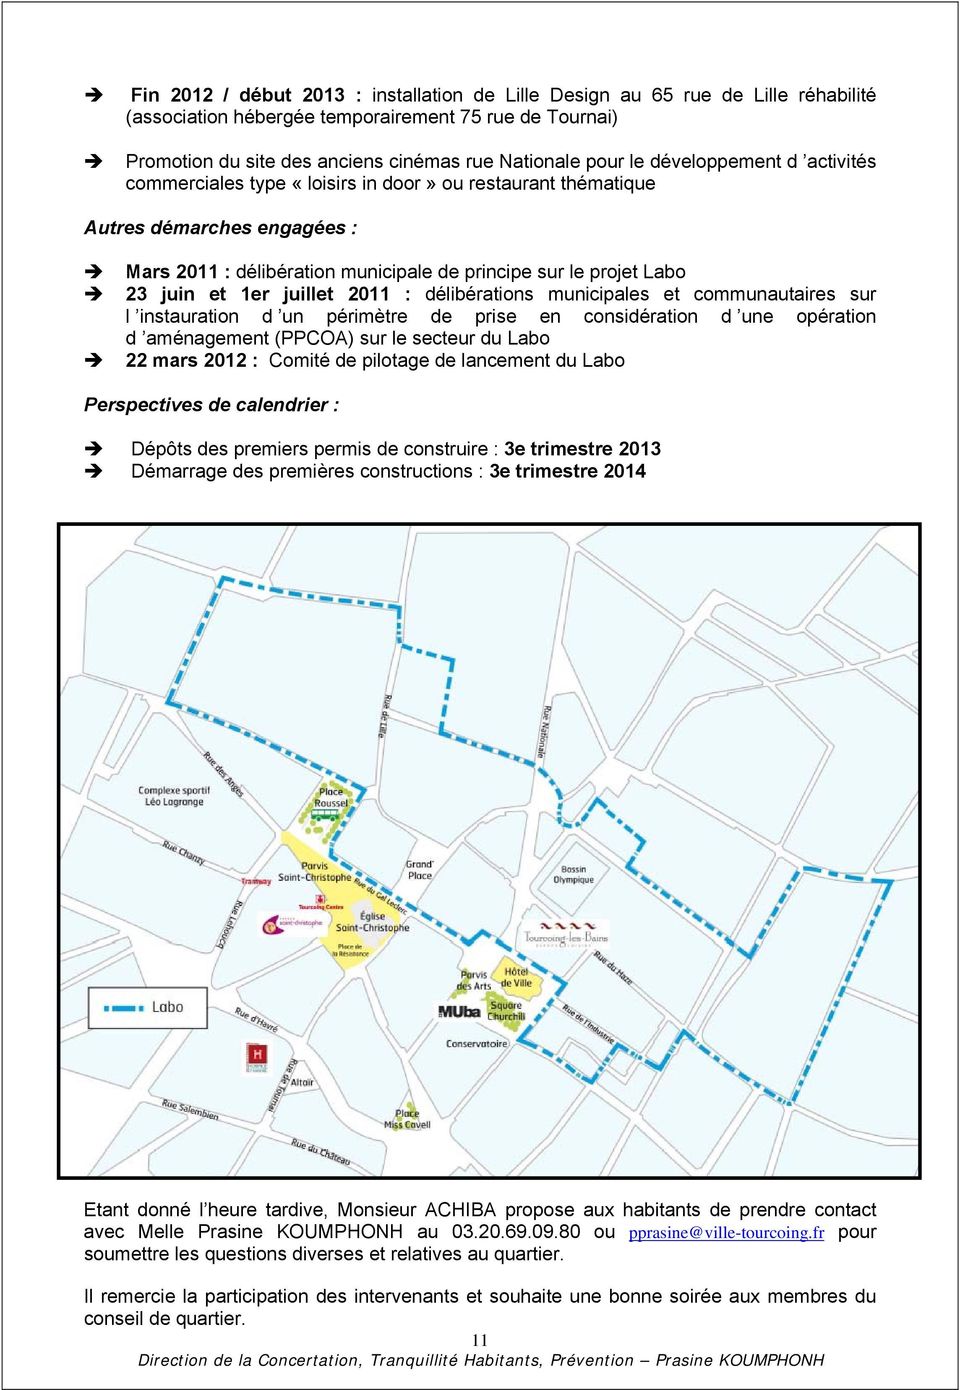 juillet 2011 : délibérations municipales et communautaires sur l instauration d un périmètre de prise en considération d une opération d aménagement (PPCOA) sur le secteur du Labo 22 mars 2012 :